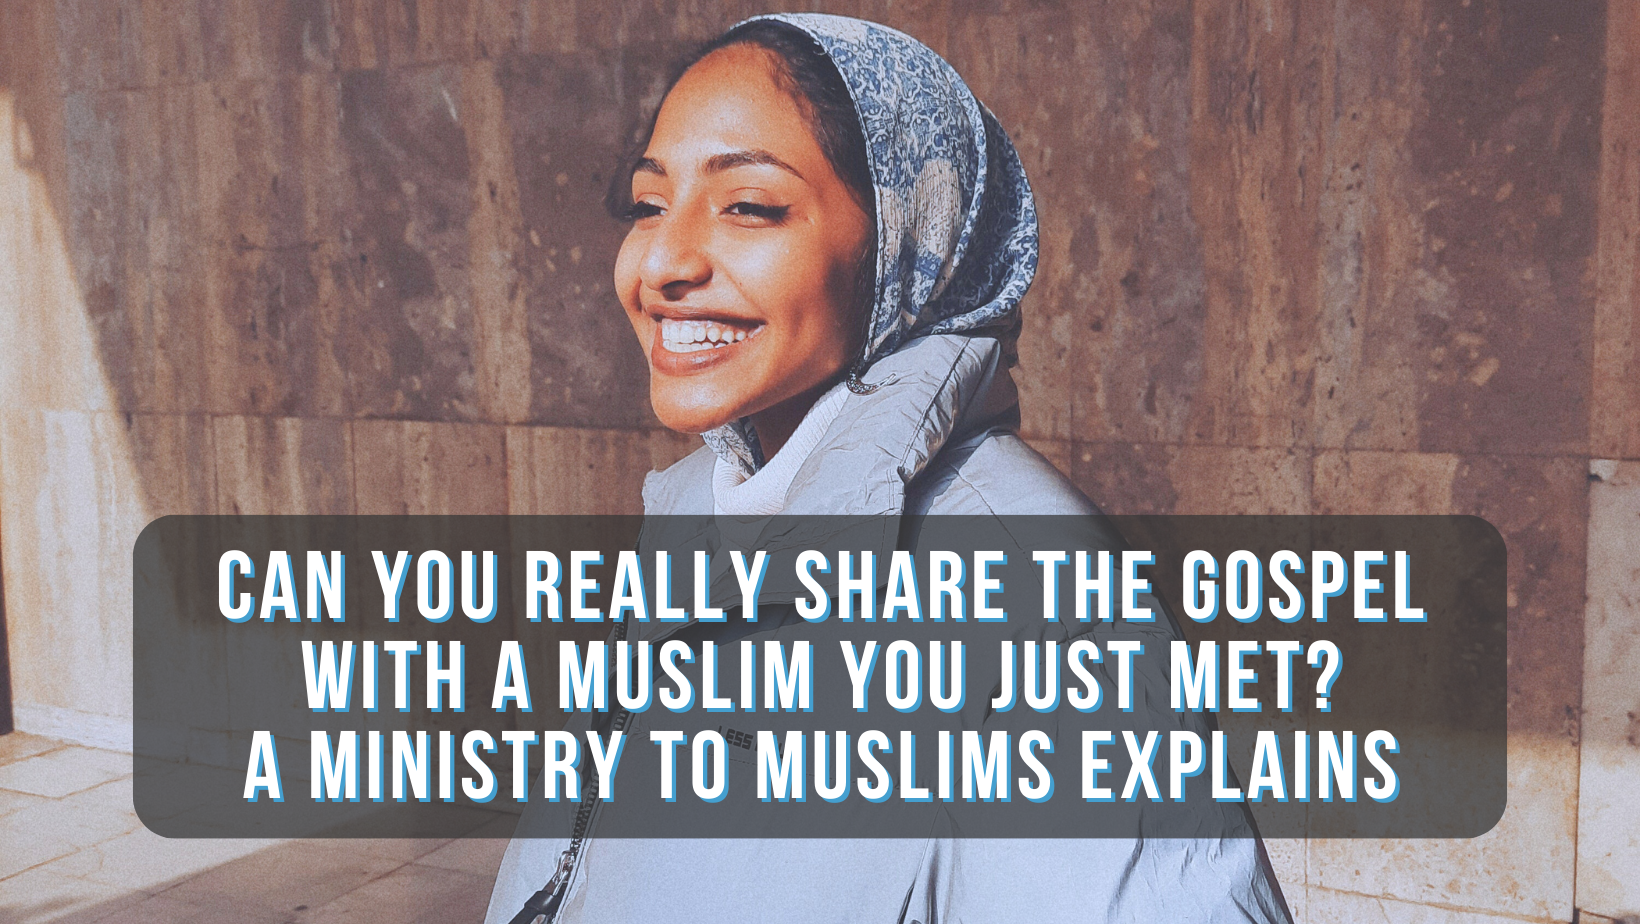 Blog title image- Muslim woman smiling